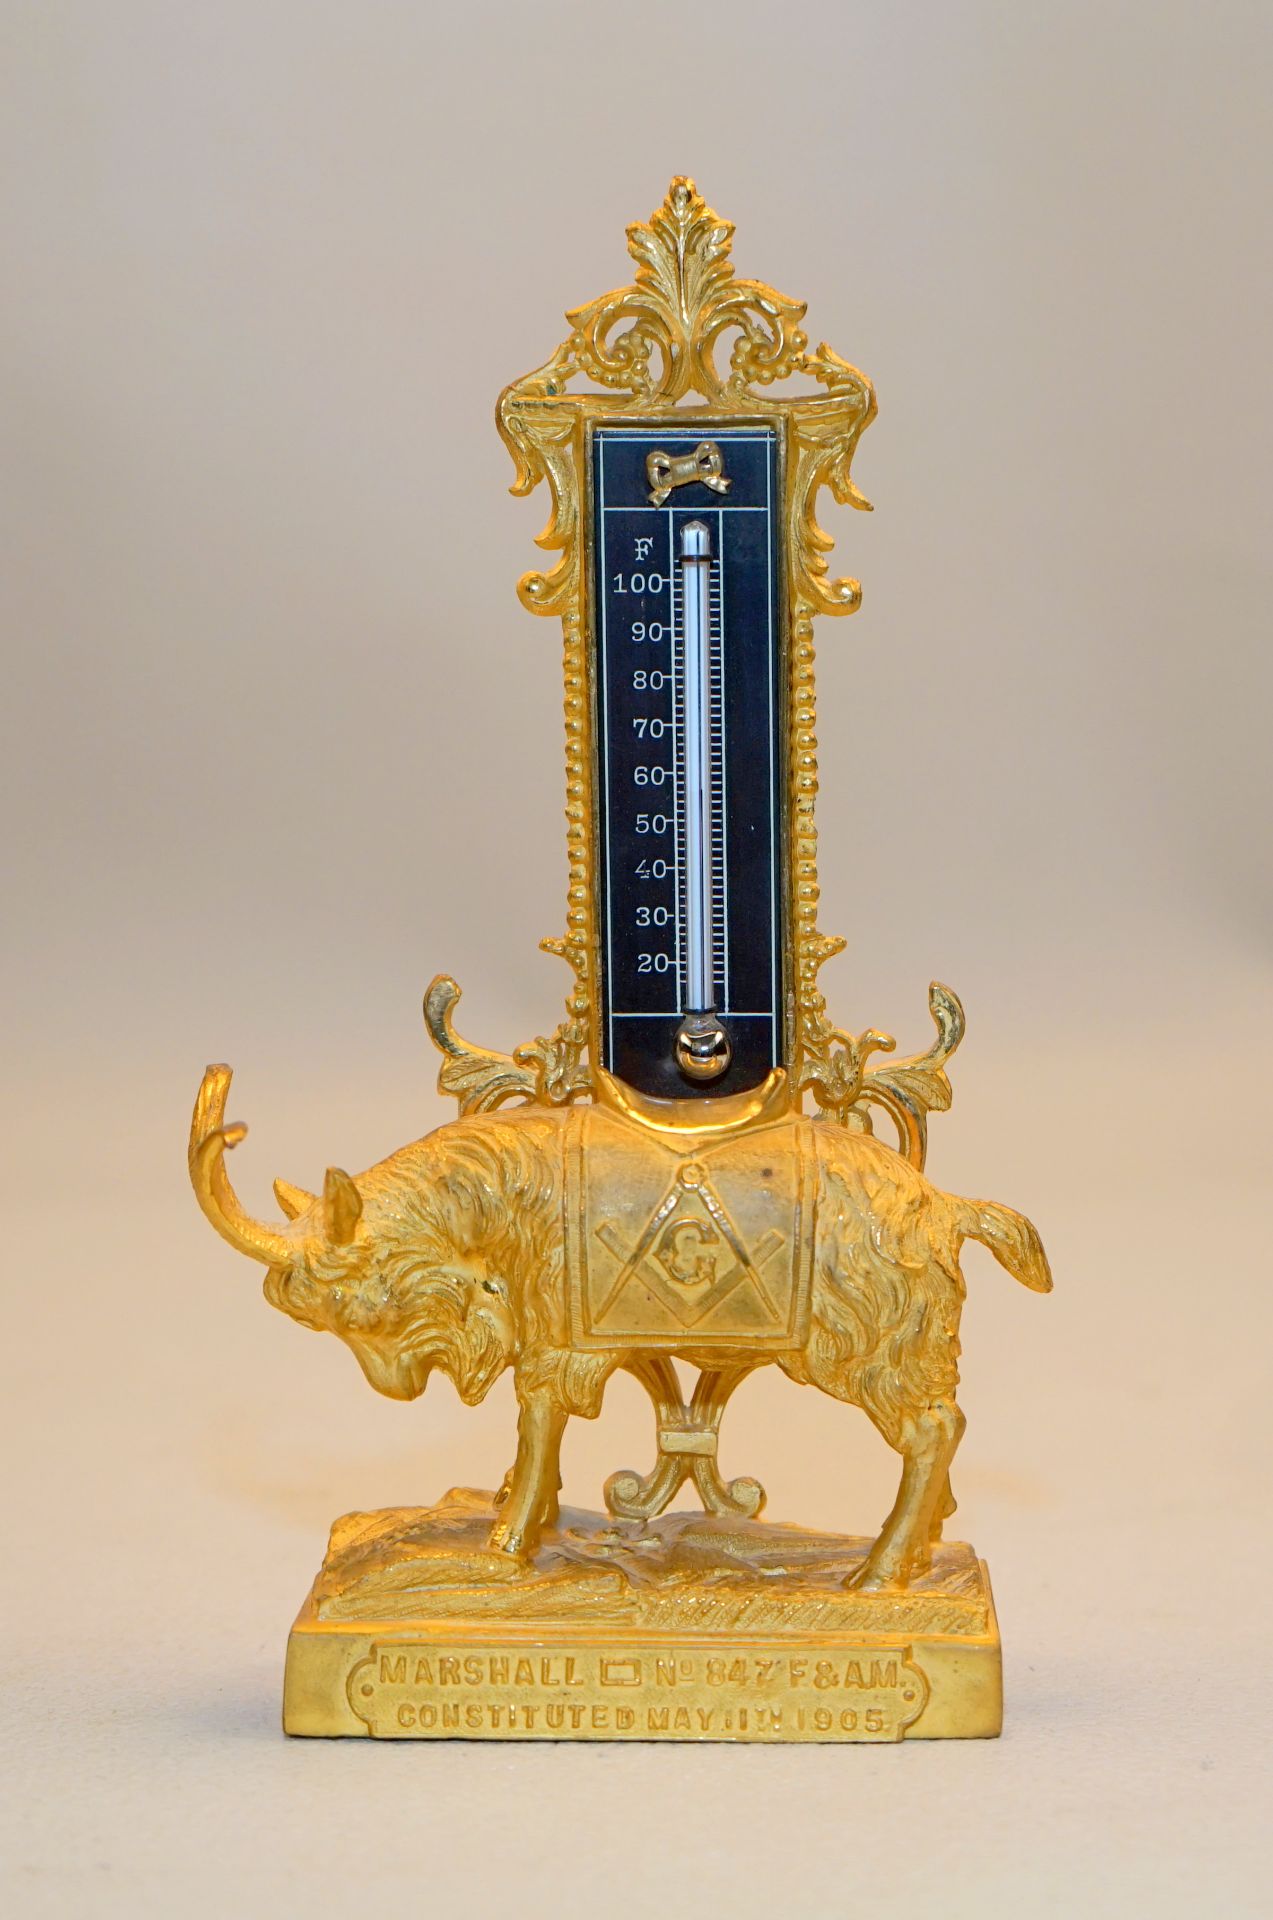 Freimaurer Thermometer mit Darstellung der Logenziege, 1905,für Marshall No. 847 constituted May